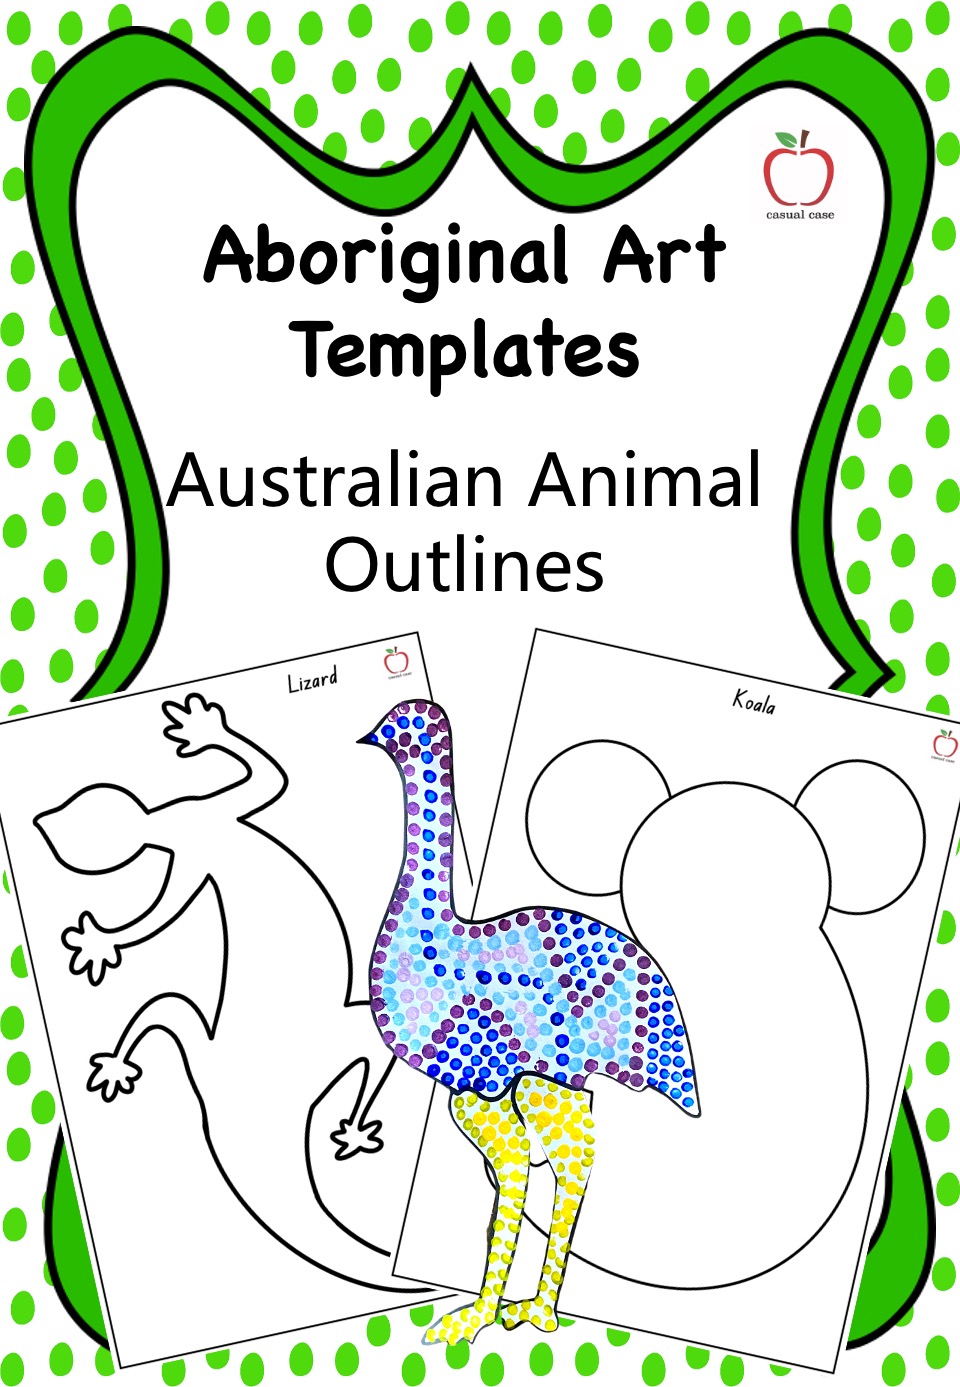 kløft delikat Bebrejde Australian Animal Outlines » Casual Case Aboriginal art templates